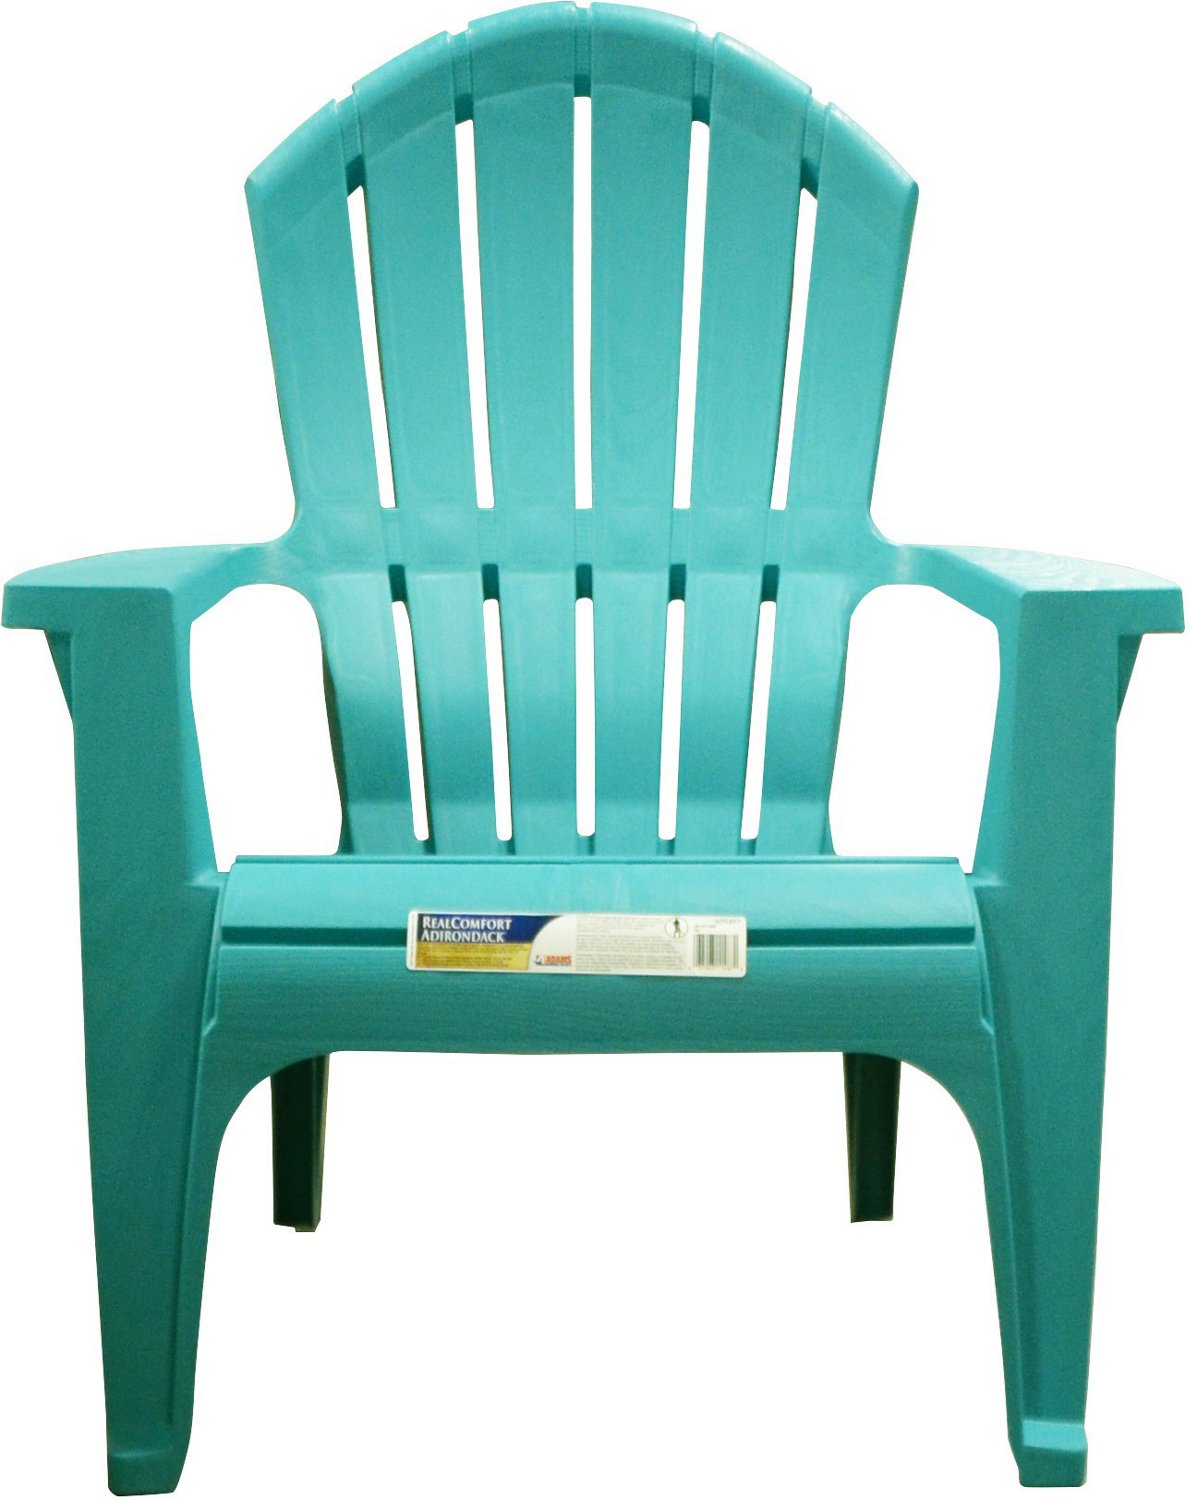 Hannah Matic: Real Comfort Adirondack Chairs